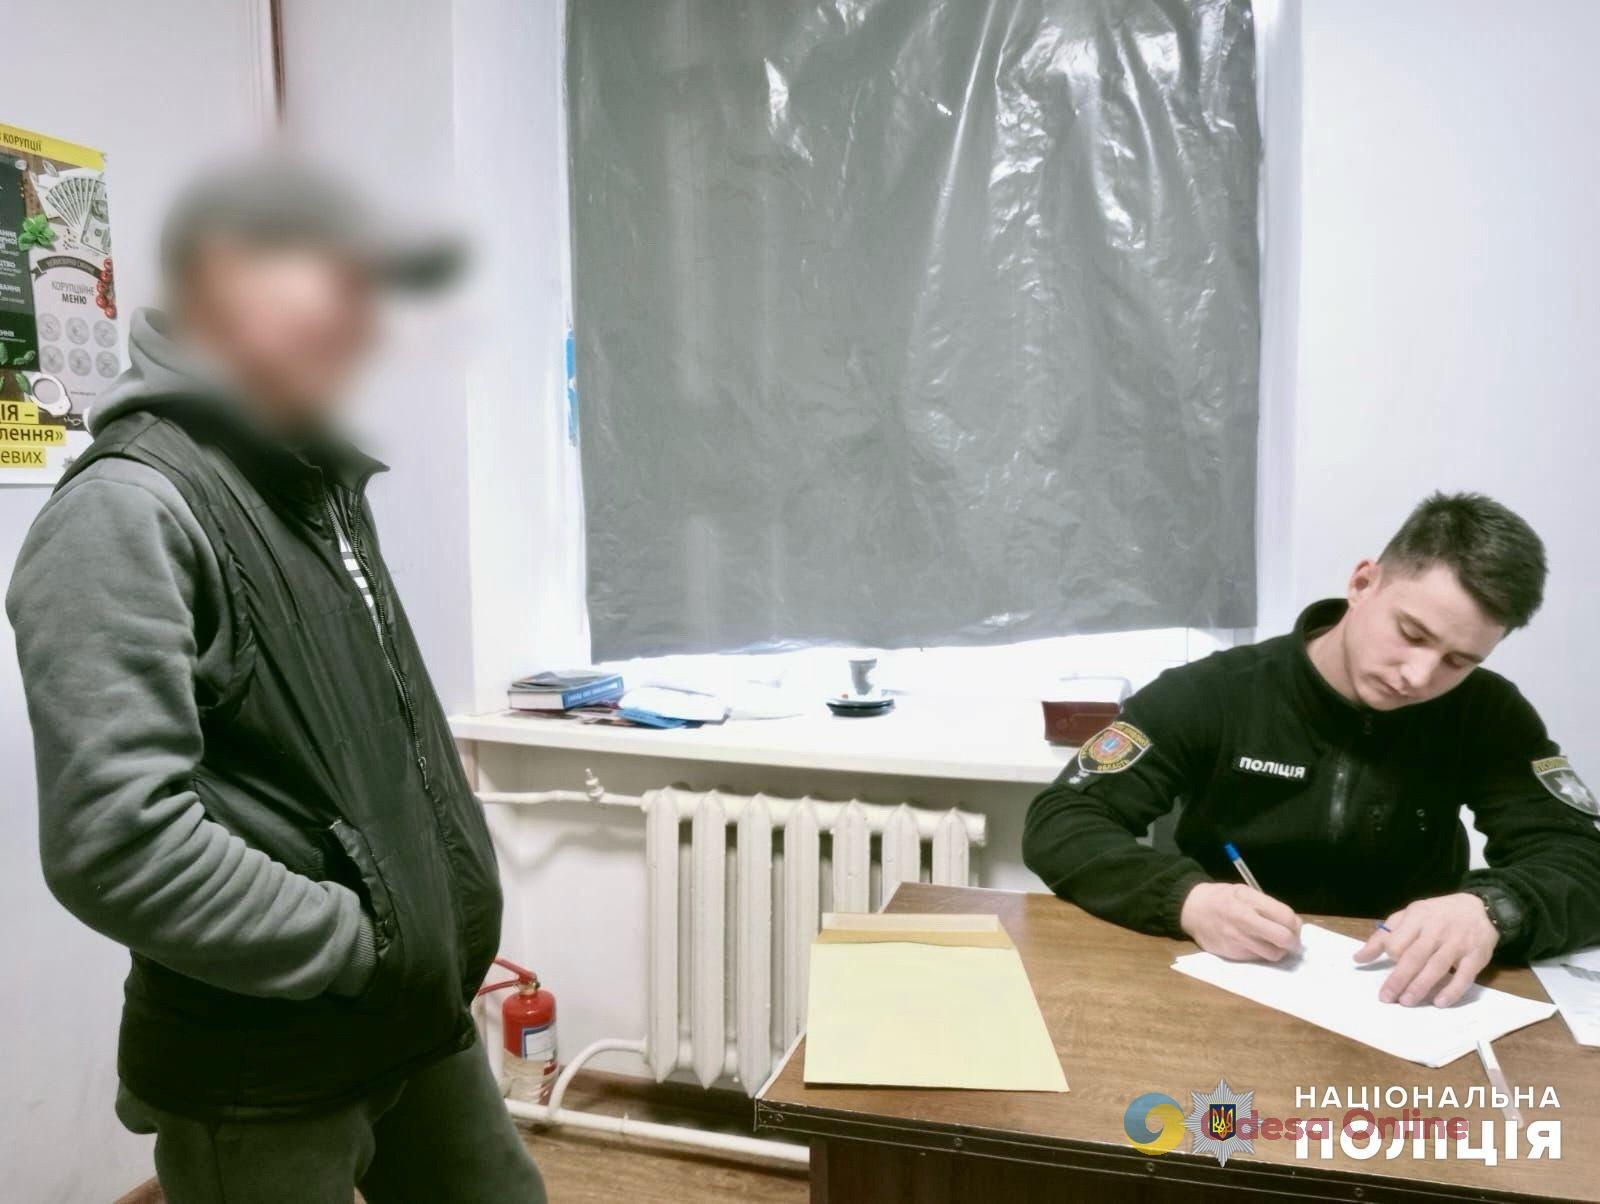 Житель Одесской области украл у соседки нутрий, чтобы приготовить их и угостить друзей